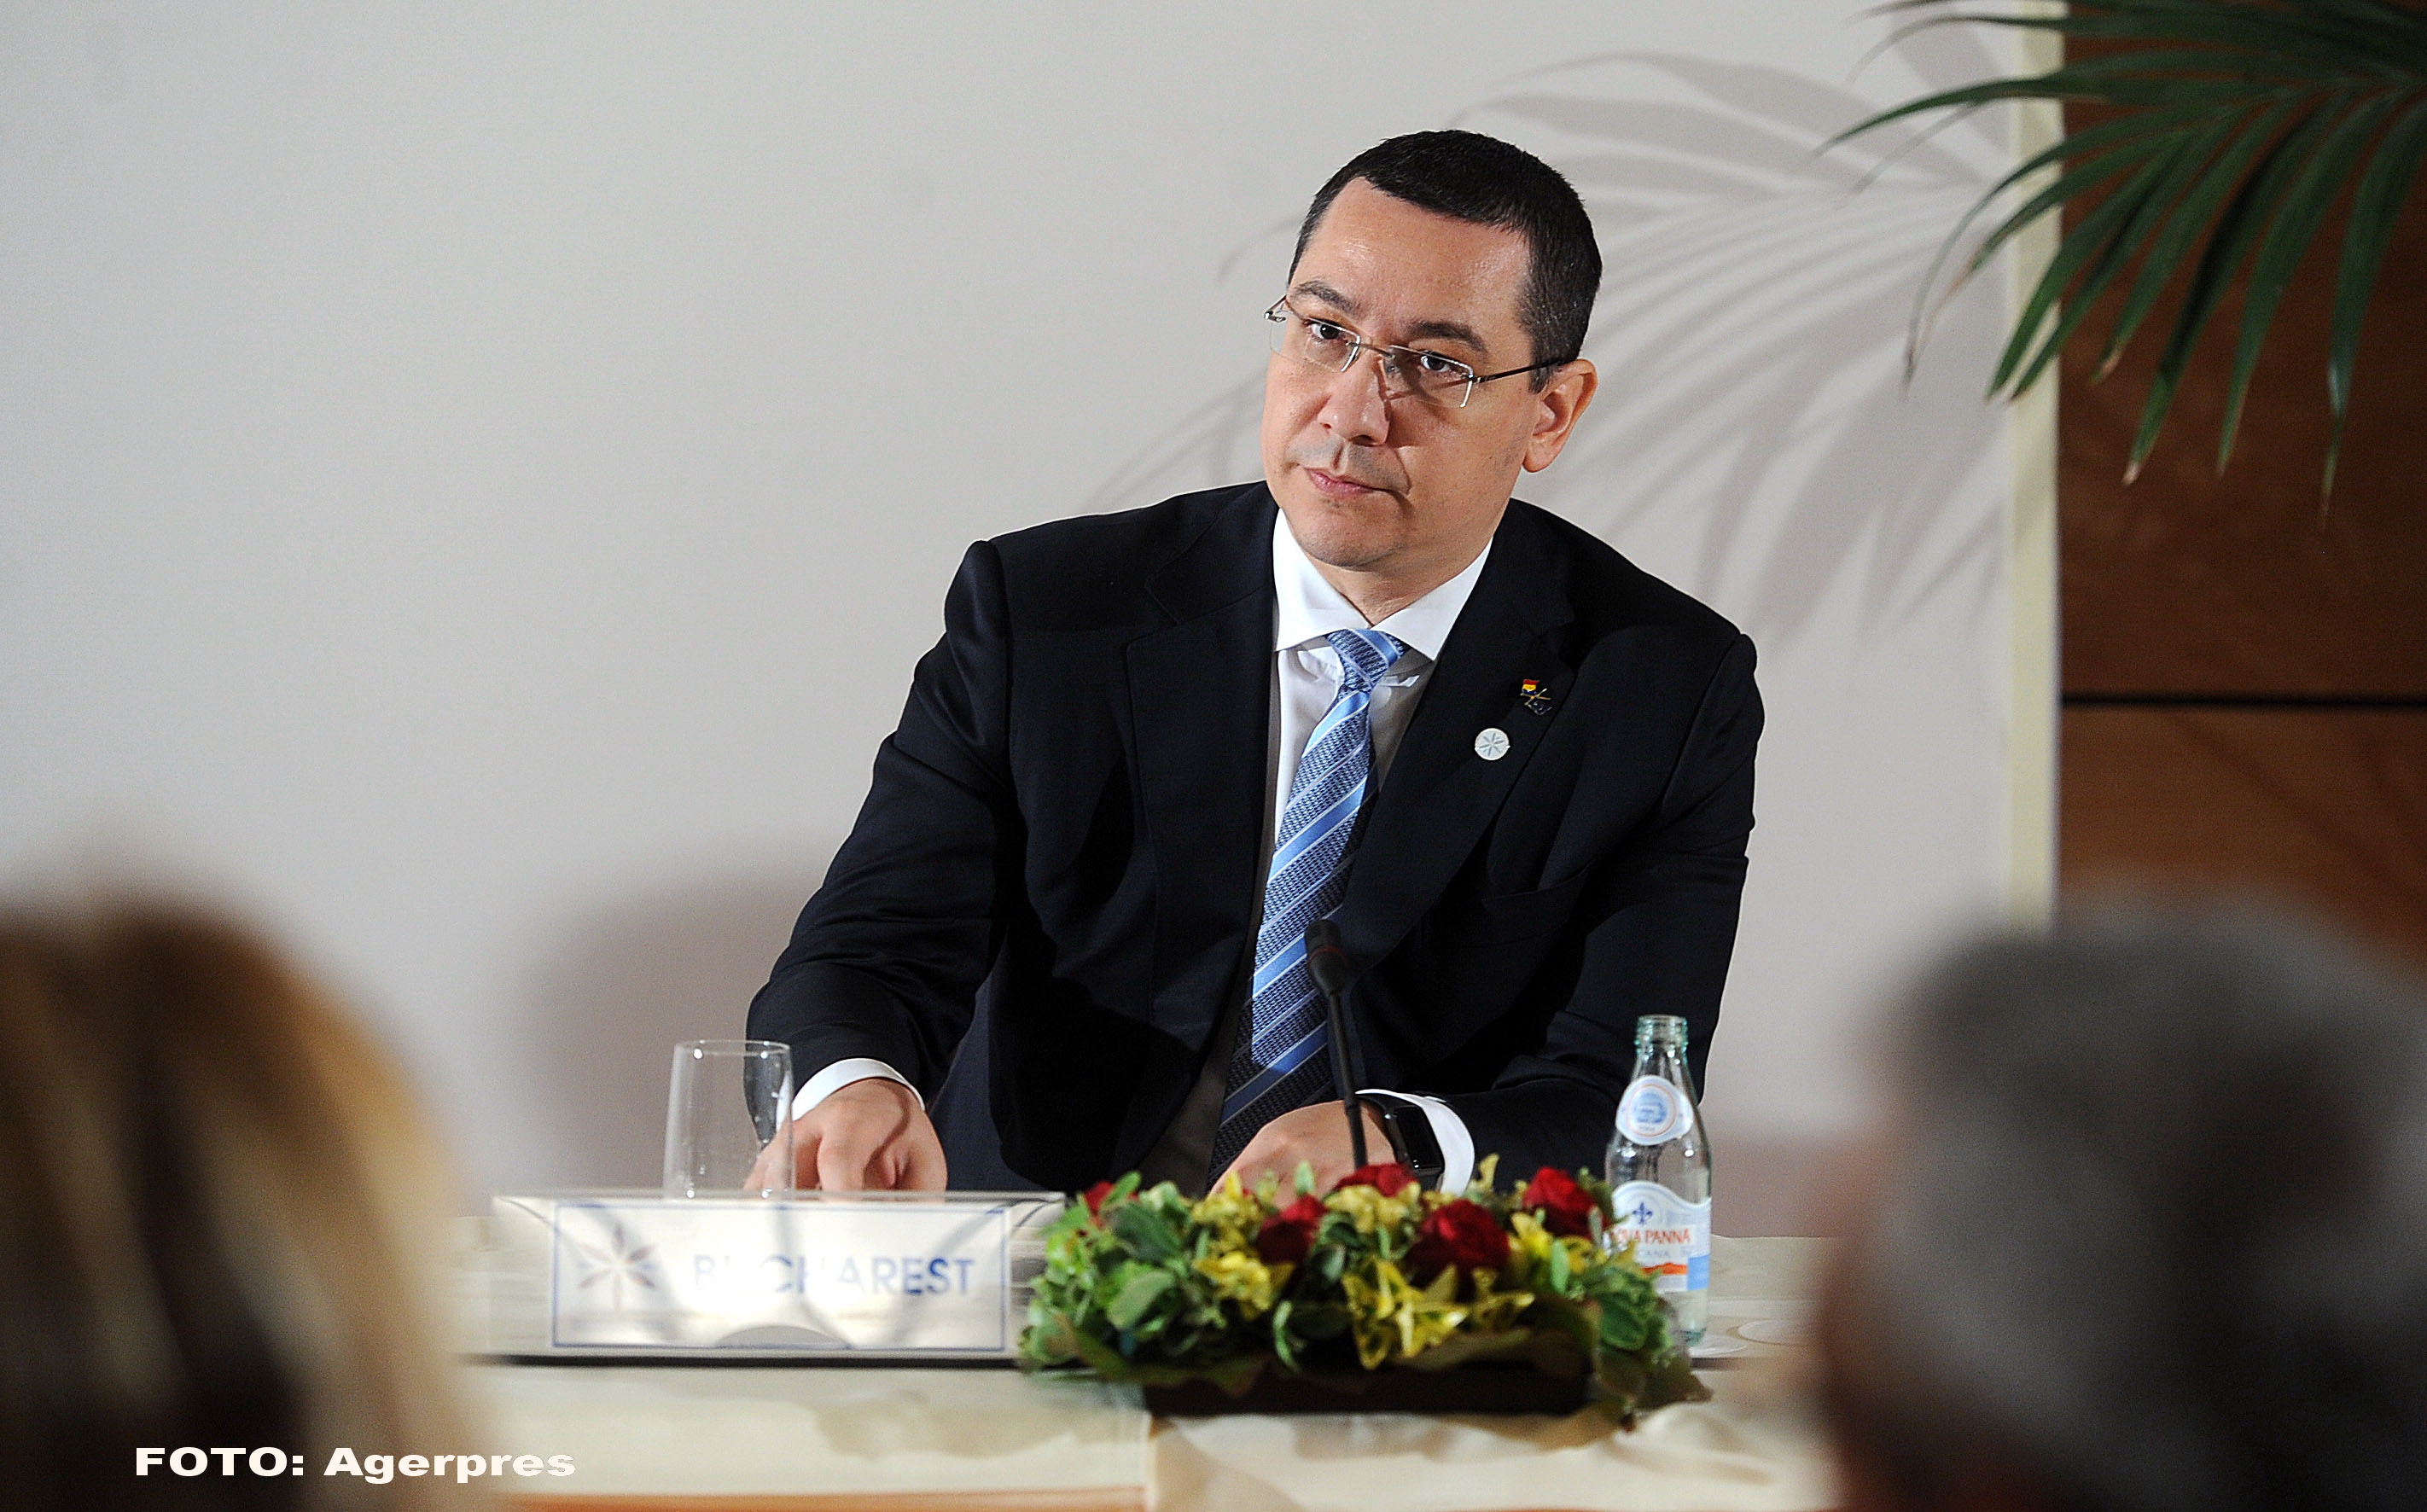 CSM a sesizat Inspectia Judiciara in cazul lui Victor Ponta. Premierul spusese ca Dragnea a fost condamnat pe nedrept